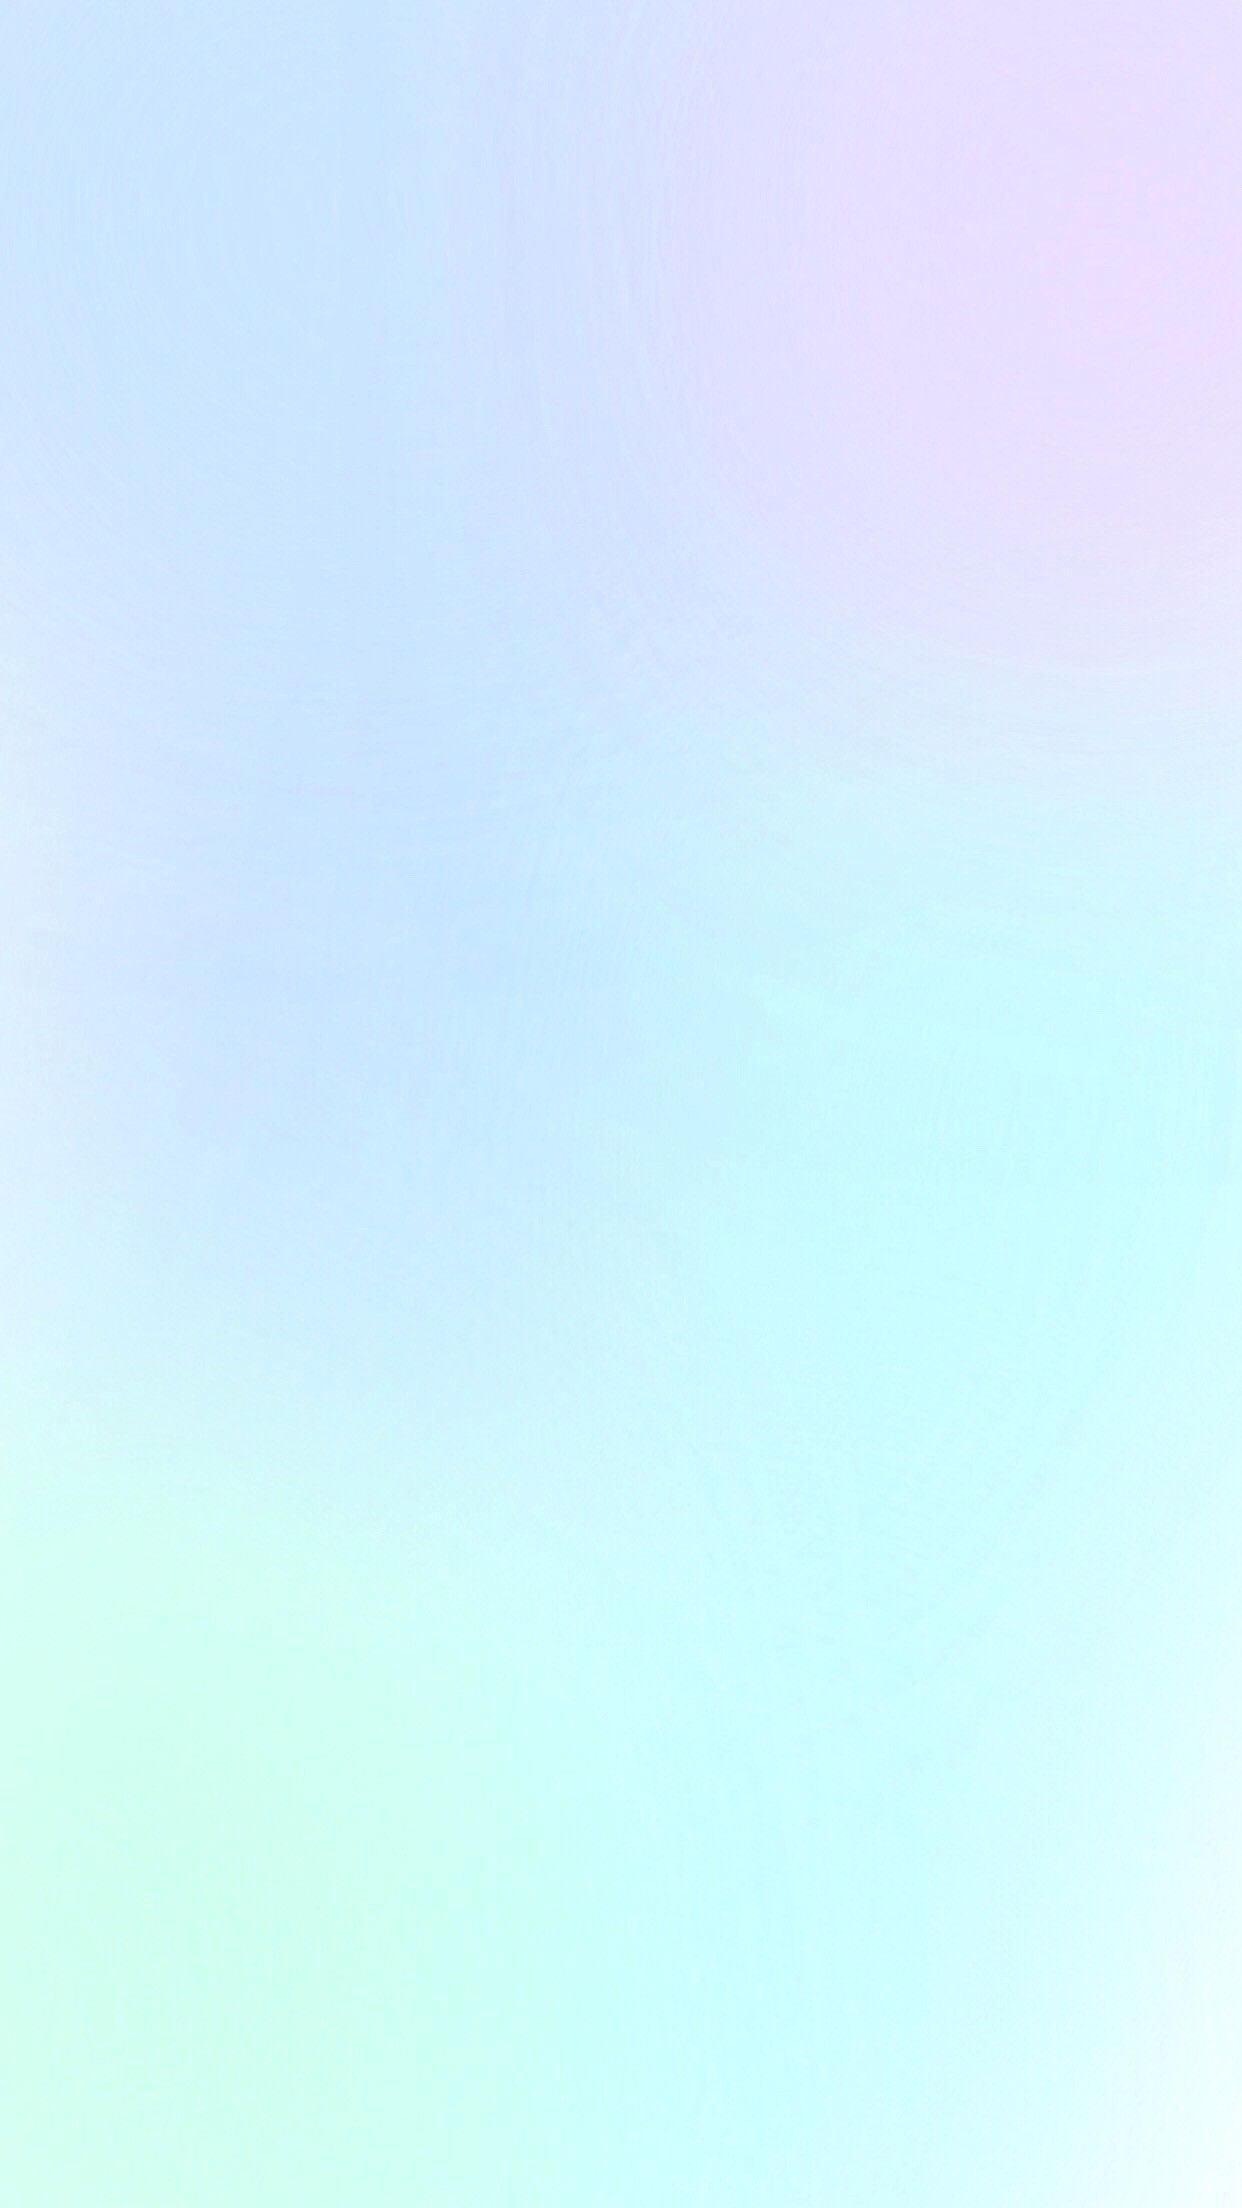 Pastel Blue Ombre Wallpapers - Top Những Hình Ảnh Đẹp